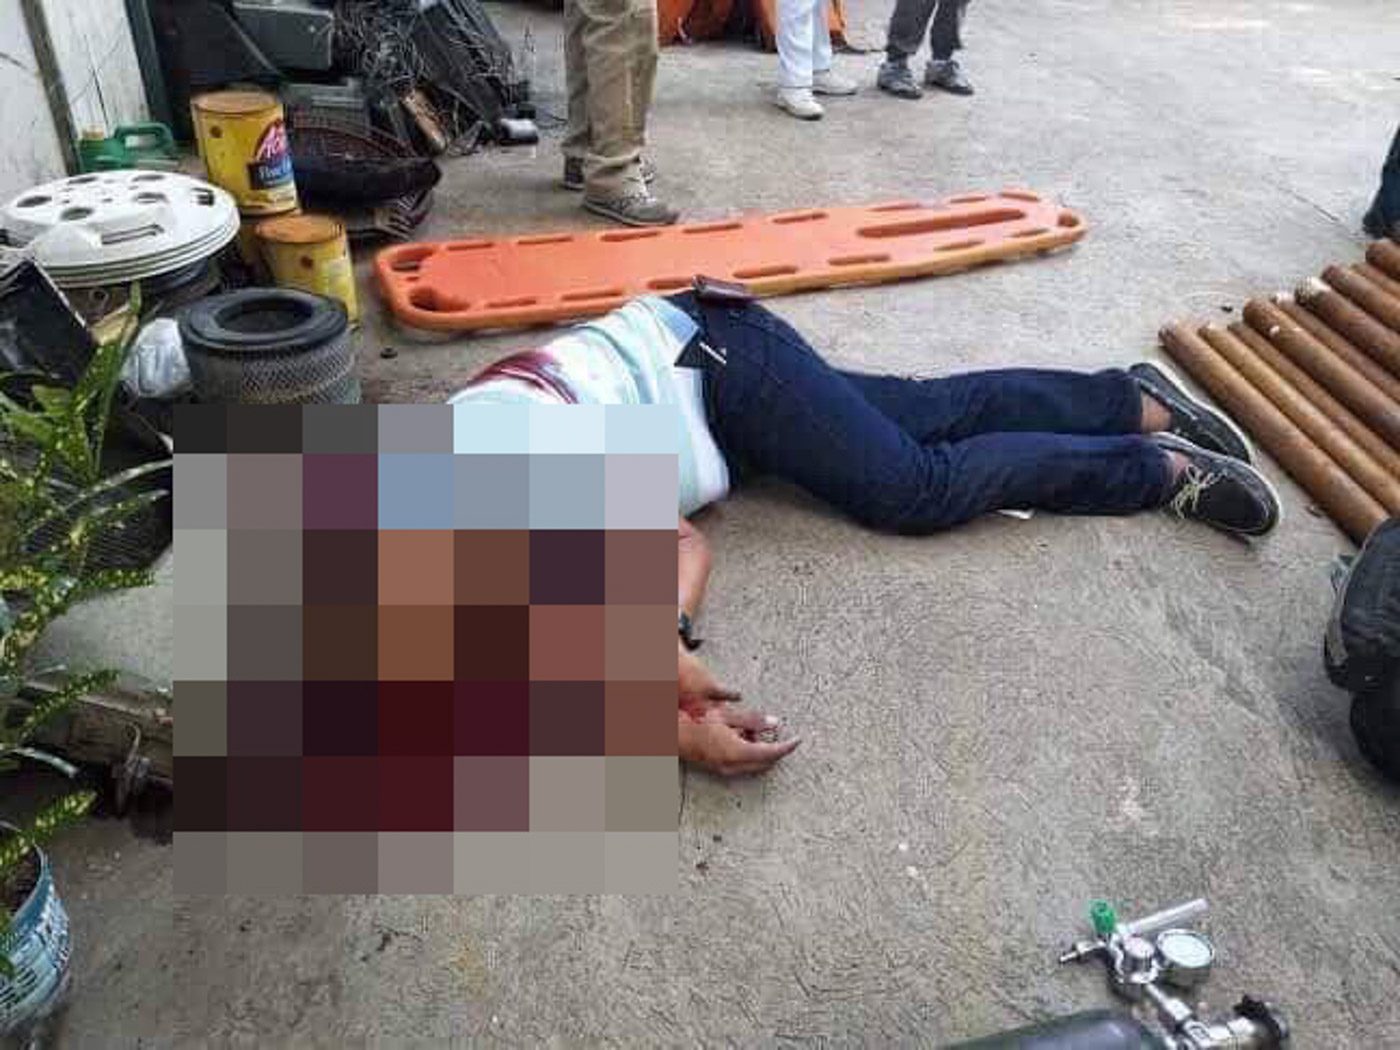 Albayalde welcomes probe into Cebu killings: ‘Walang itatago ang PNP’